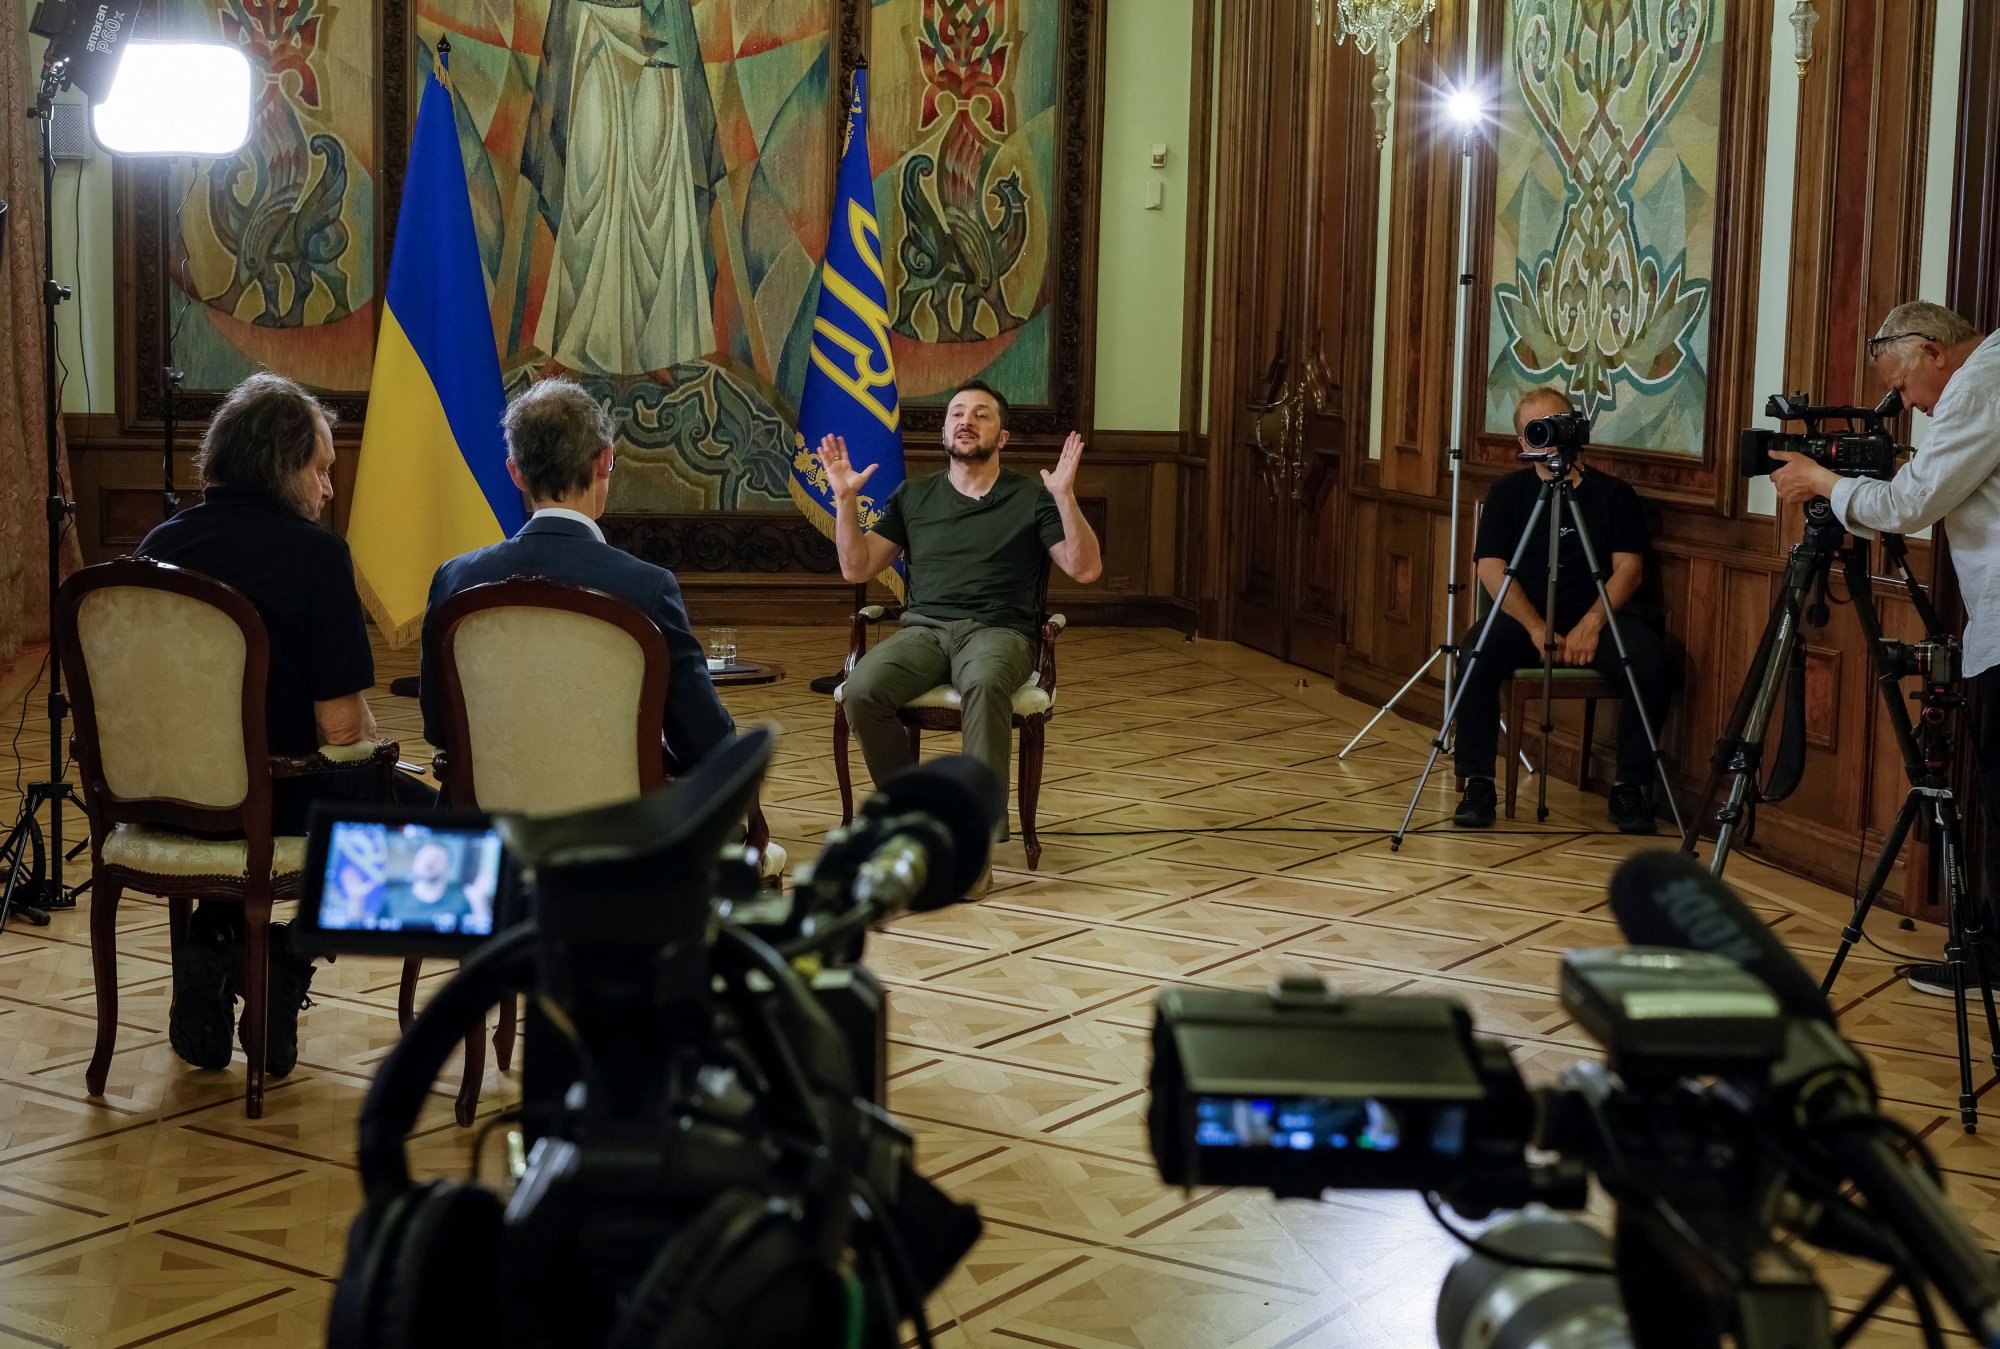 Ουκρανία: Η θητεία του Ζελένσκι έληξε, η Ρωσία δεν συζητά μαζί του, ο ίδιος δρα ως εν ενεργεία πρόεδρος